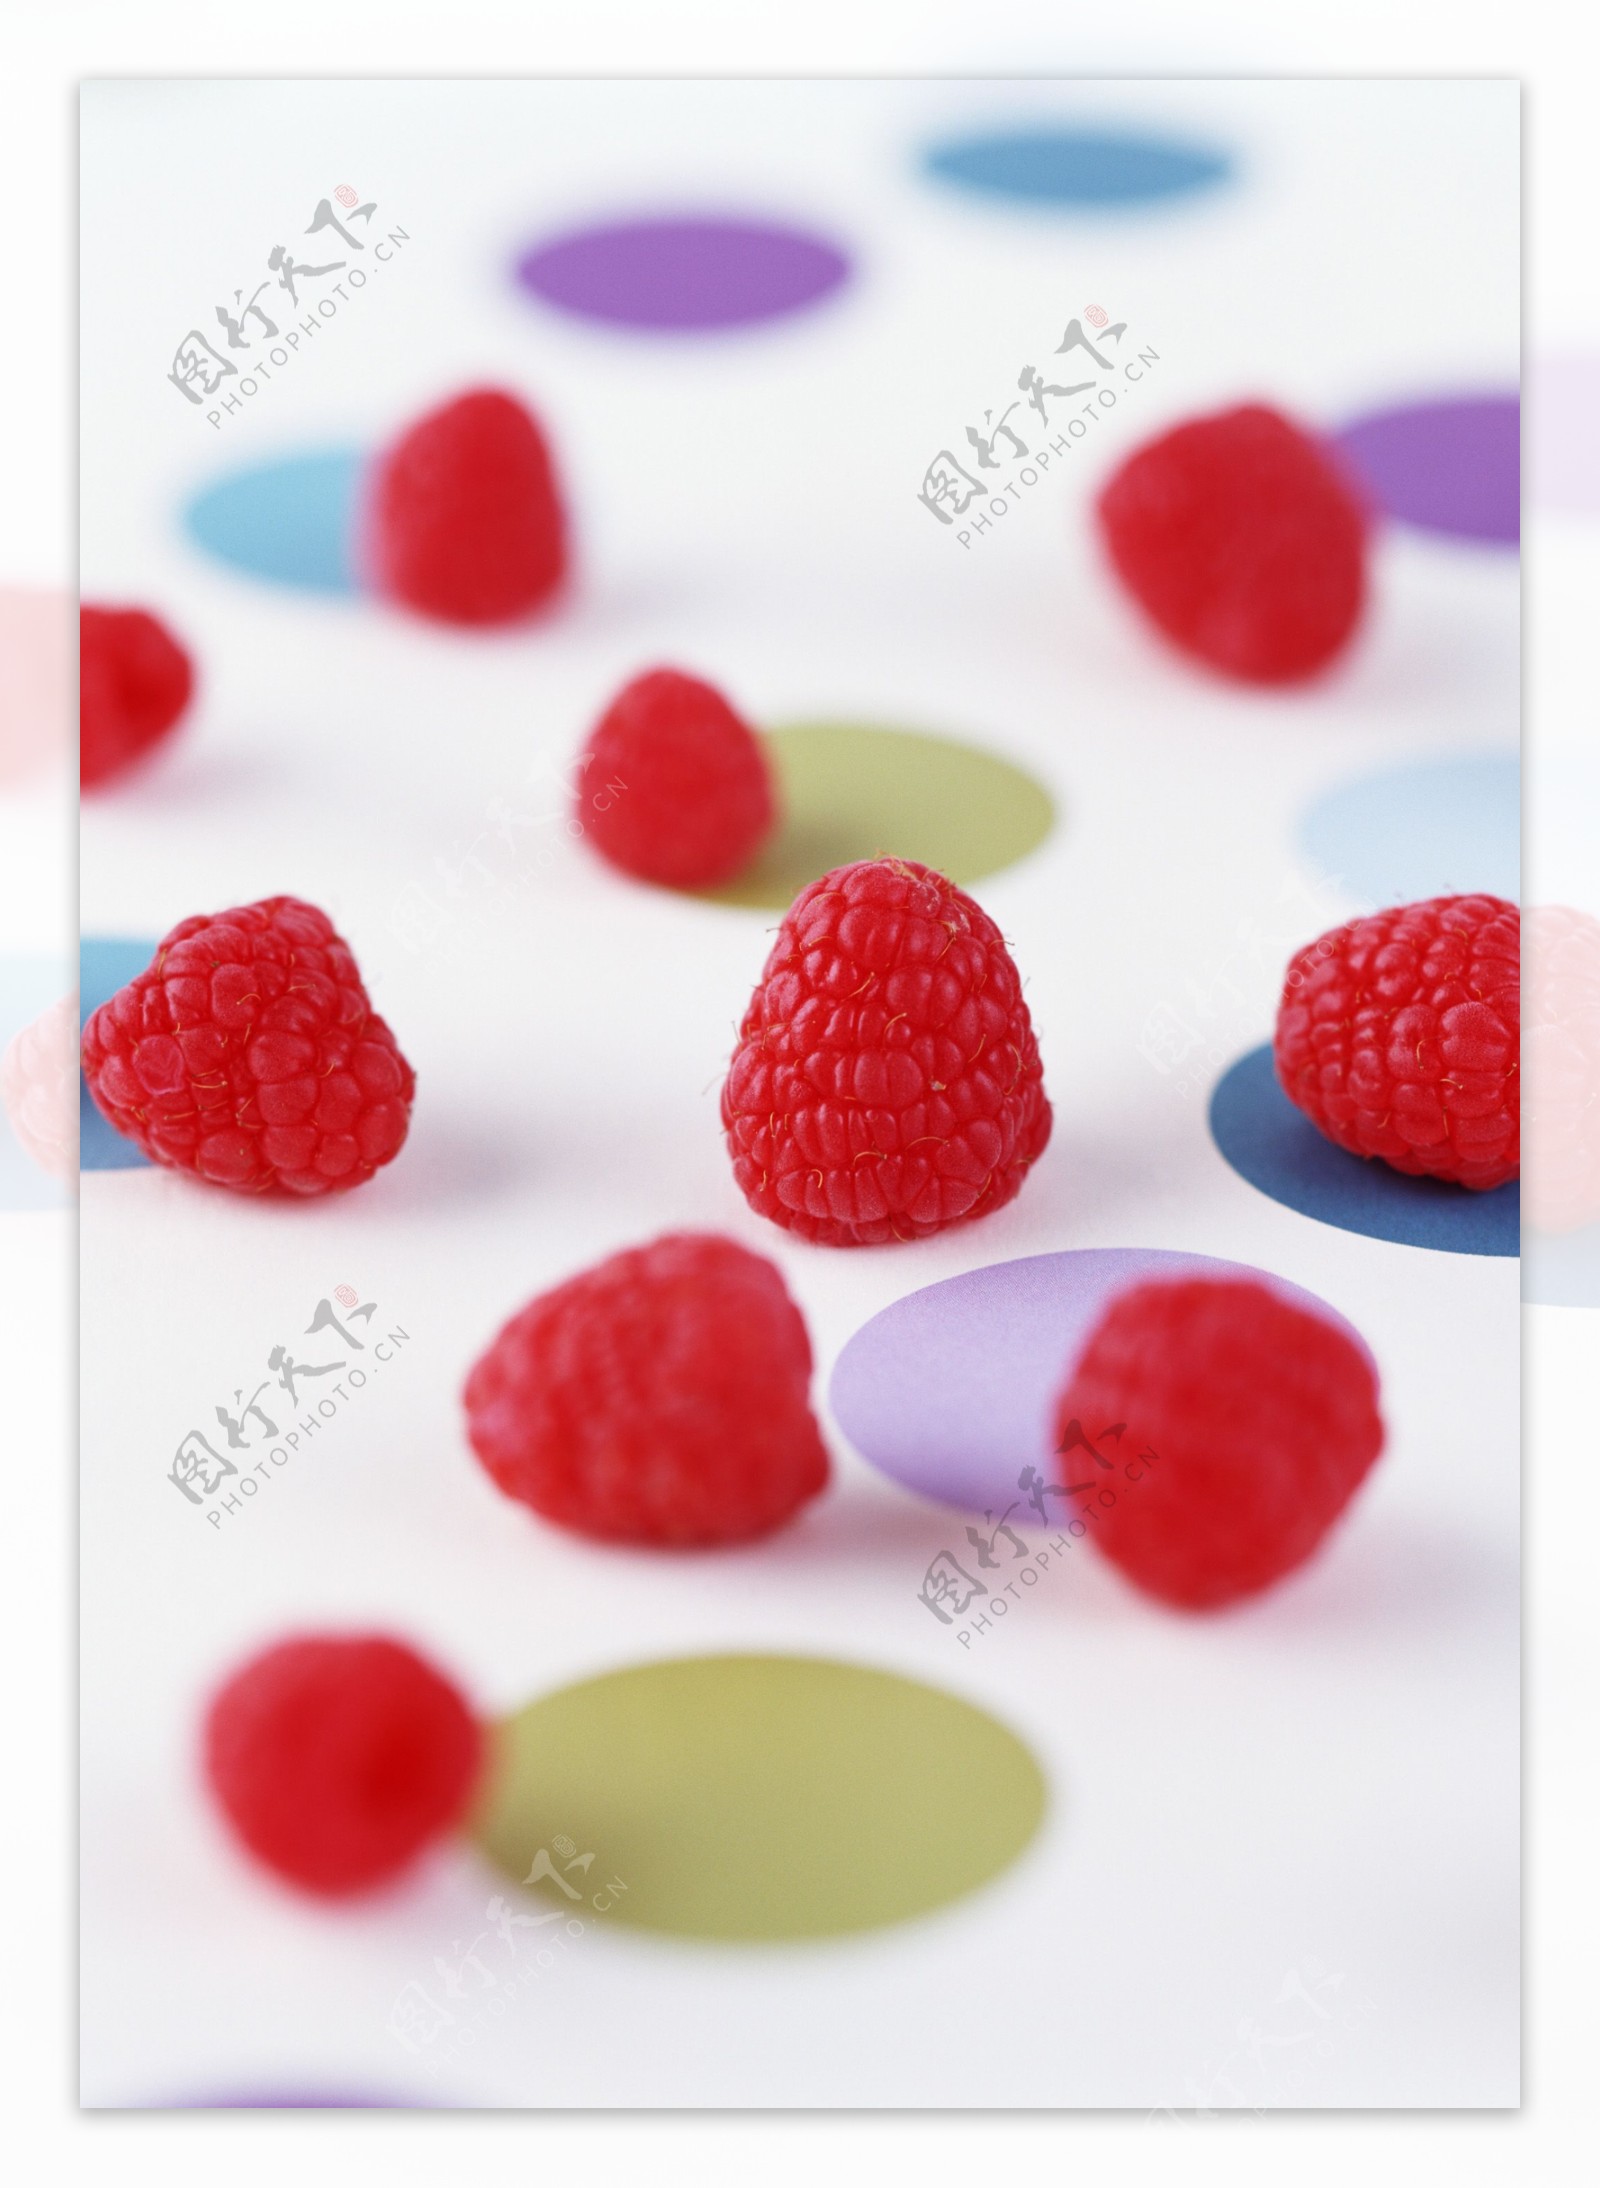 水果糕点红草莓水果新鲜水果